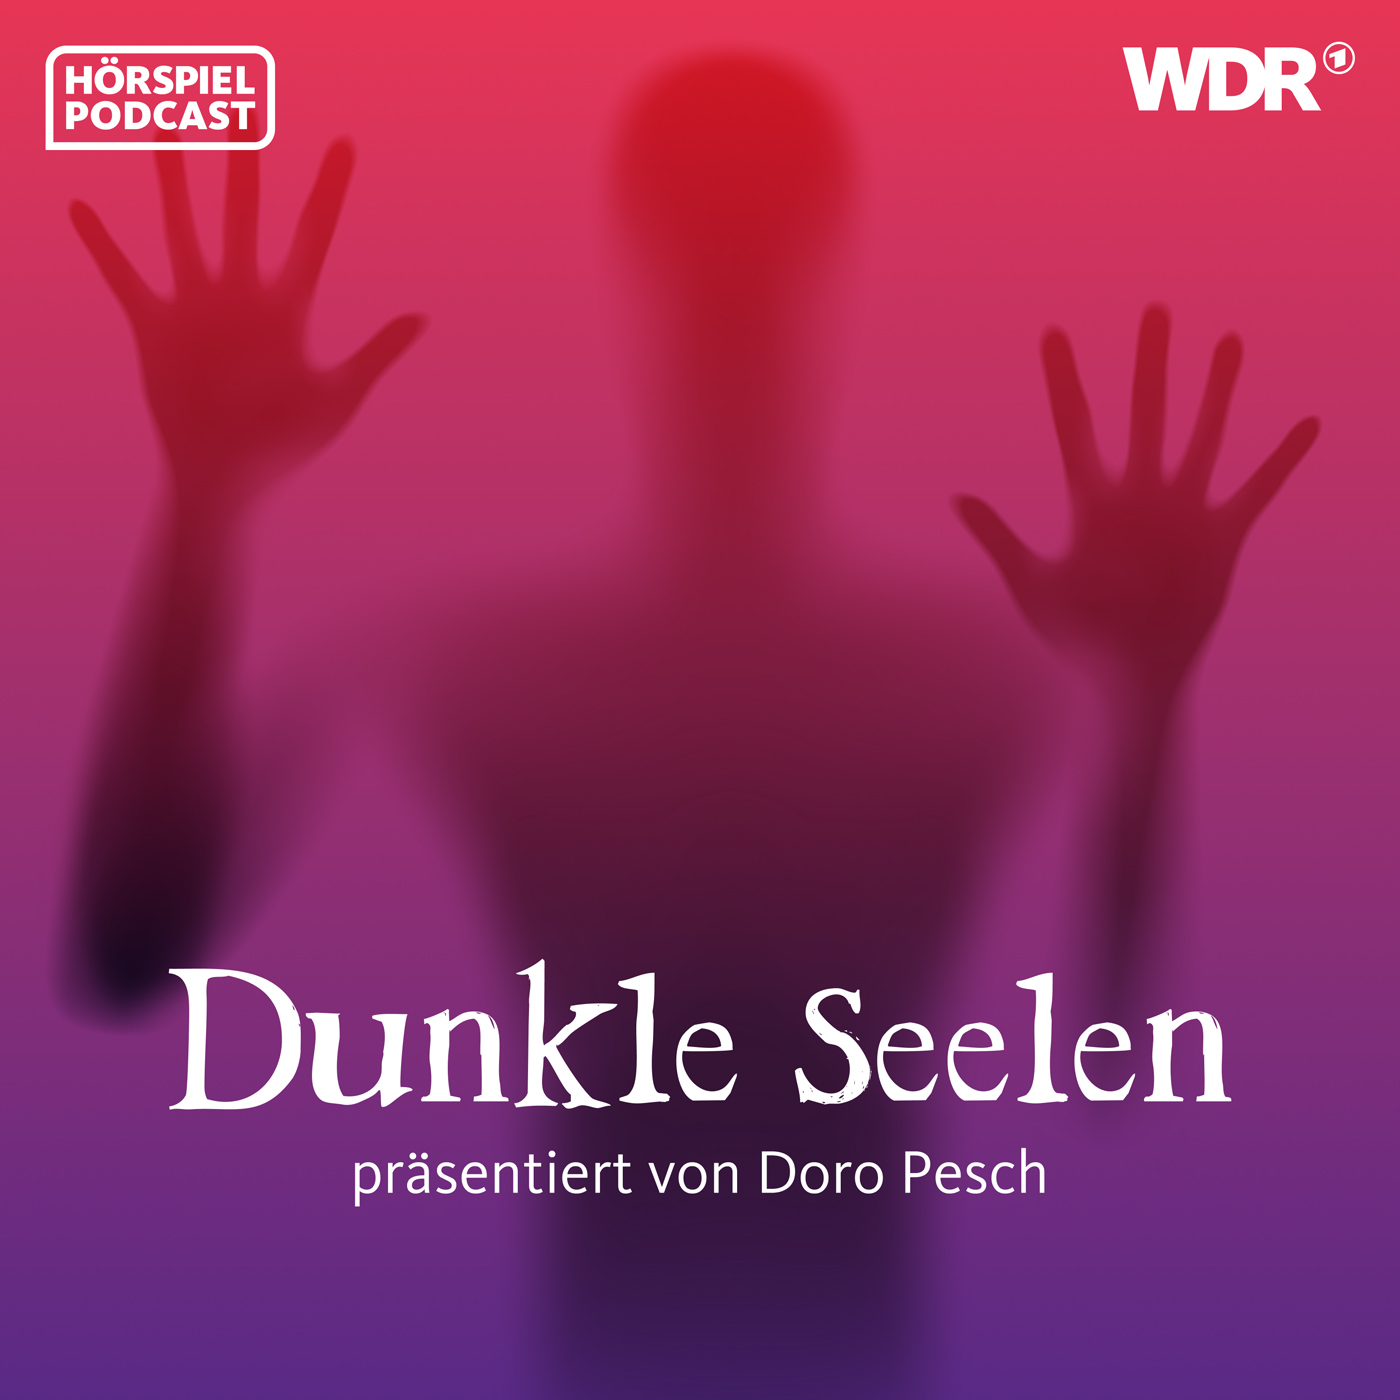 Dunkle Seelen - präsentiert von Doro Pesch. Ab dem 8. März 2022